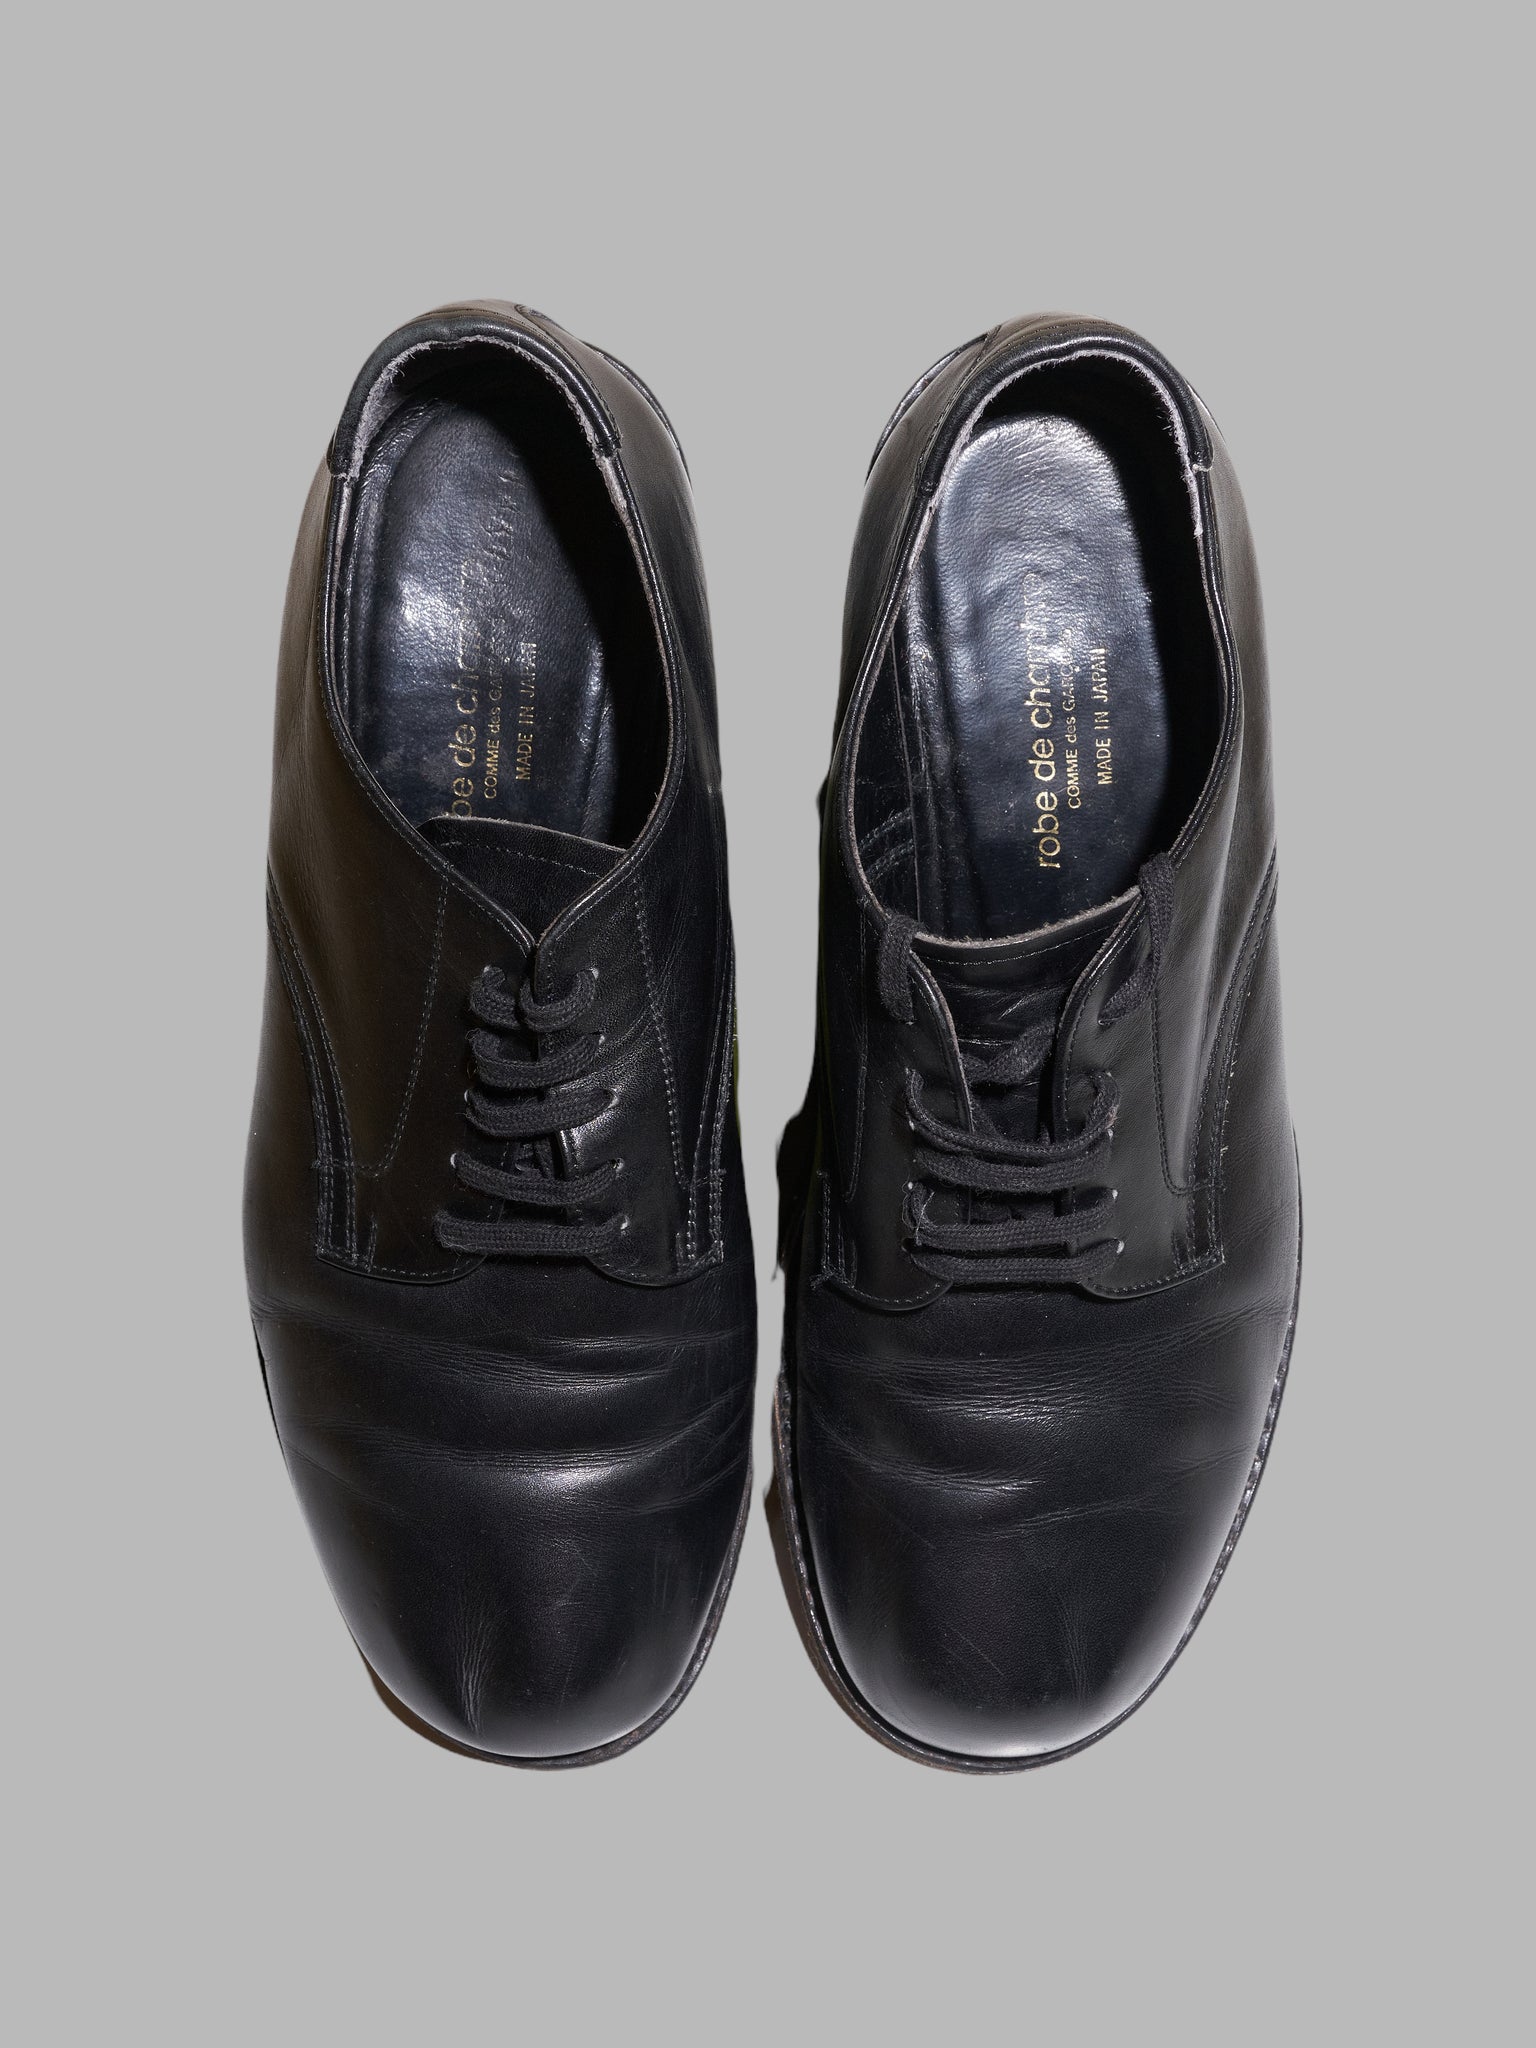 Robe de Chambre Comme des Garcons black leather derby shoes - sz 22.5 / 35.5